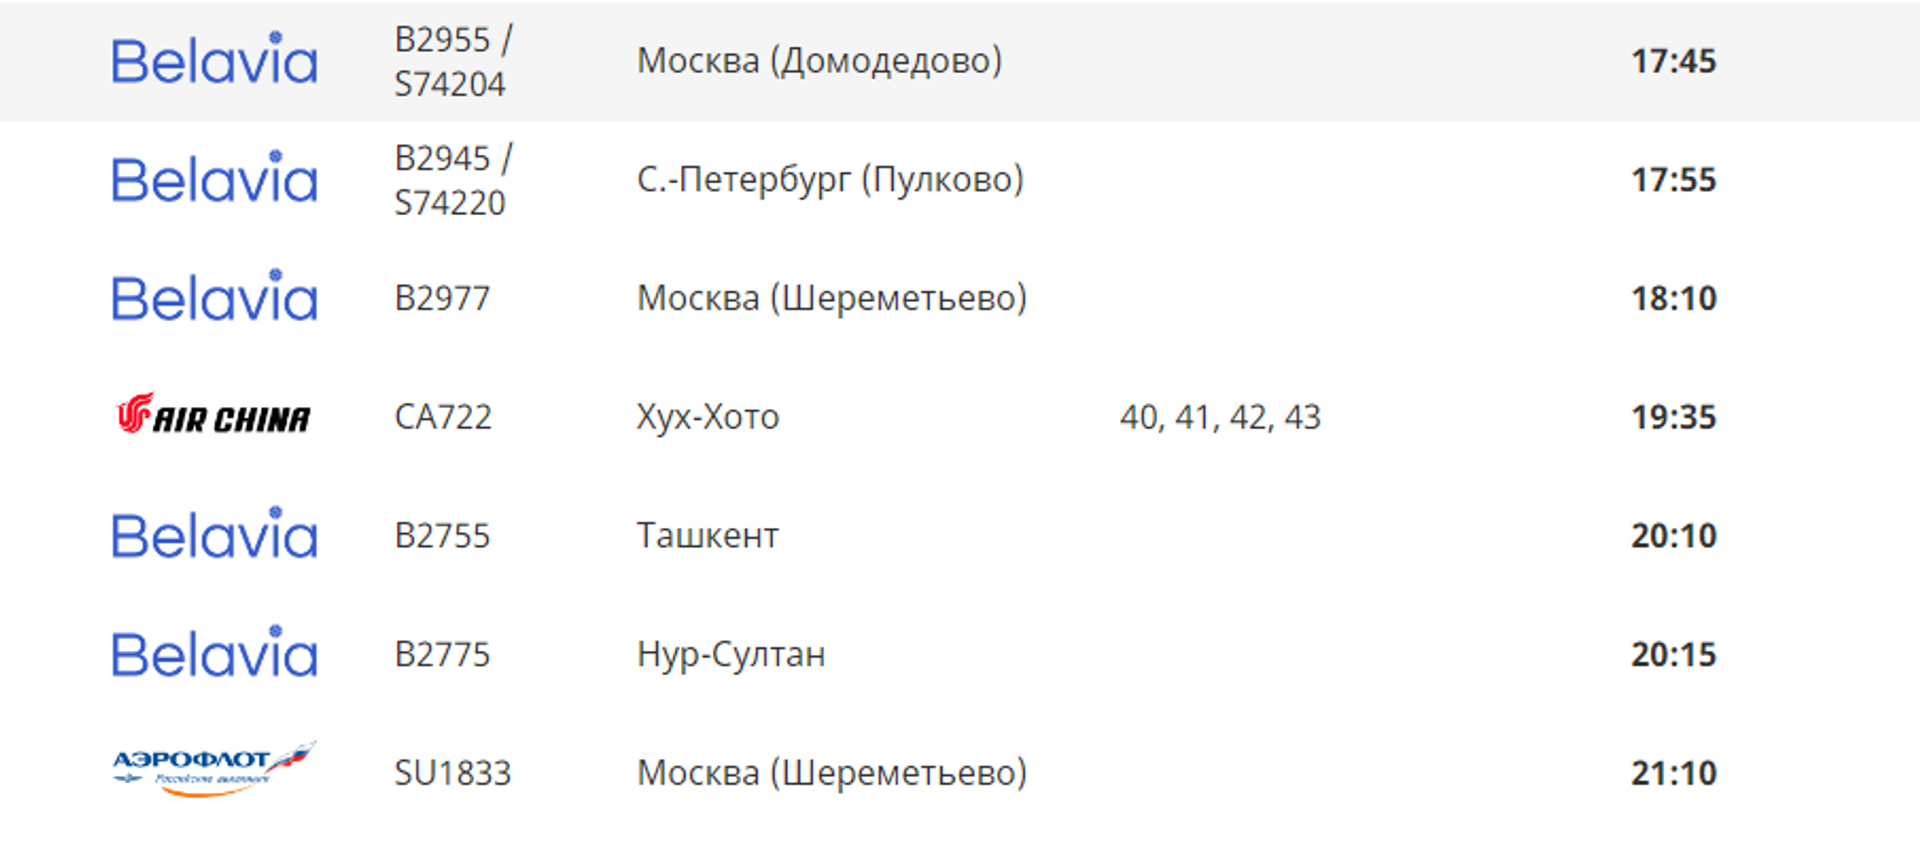 Расписание вылетов из аэропорта Минск на 1 июля 2022 - Sputnik Беларусь, 1920, 30.06.2022